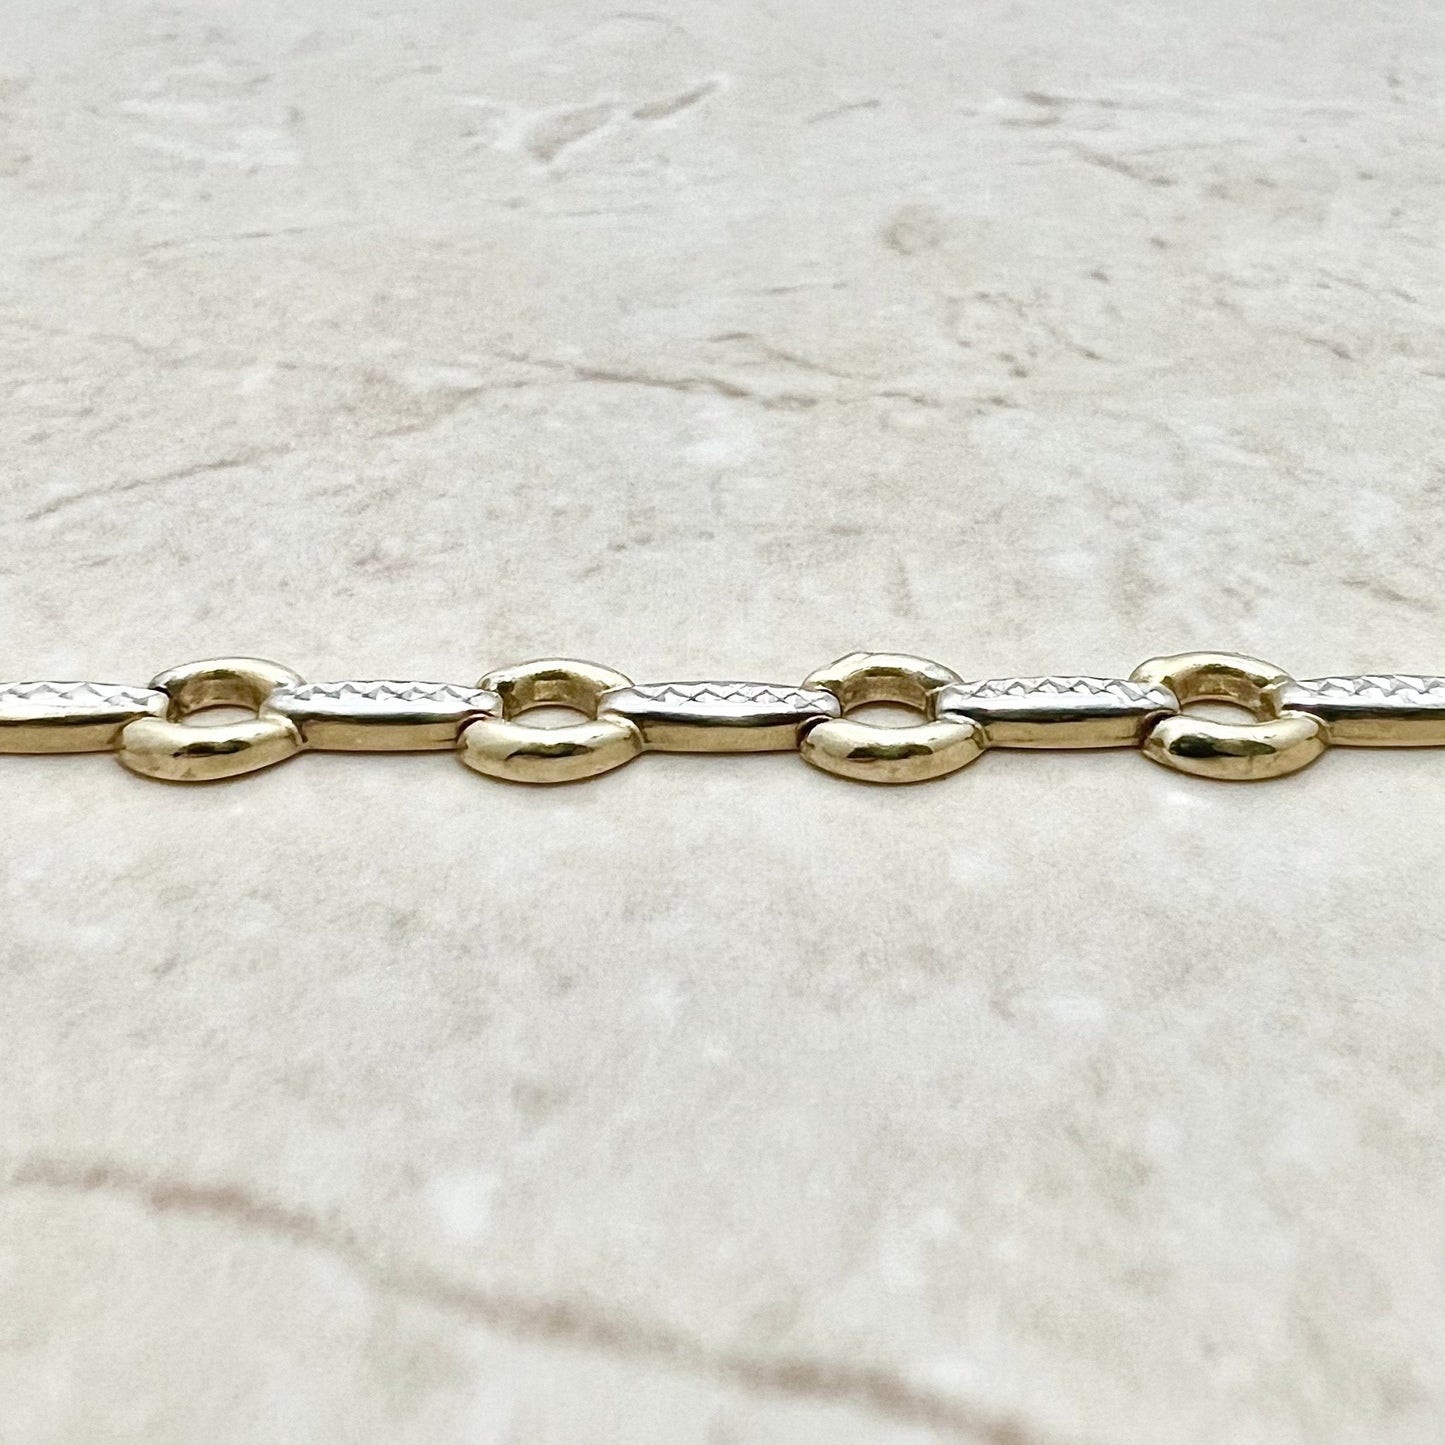 10K Two Tone Gold Bracelet - 10K Solid Gold Bracelet - Two Tone Bracelet - Gold Link Bracelet - Everyday Bracelet Gold - Minimalist Bracelet